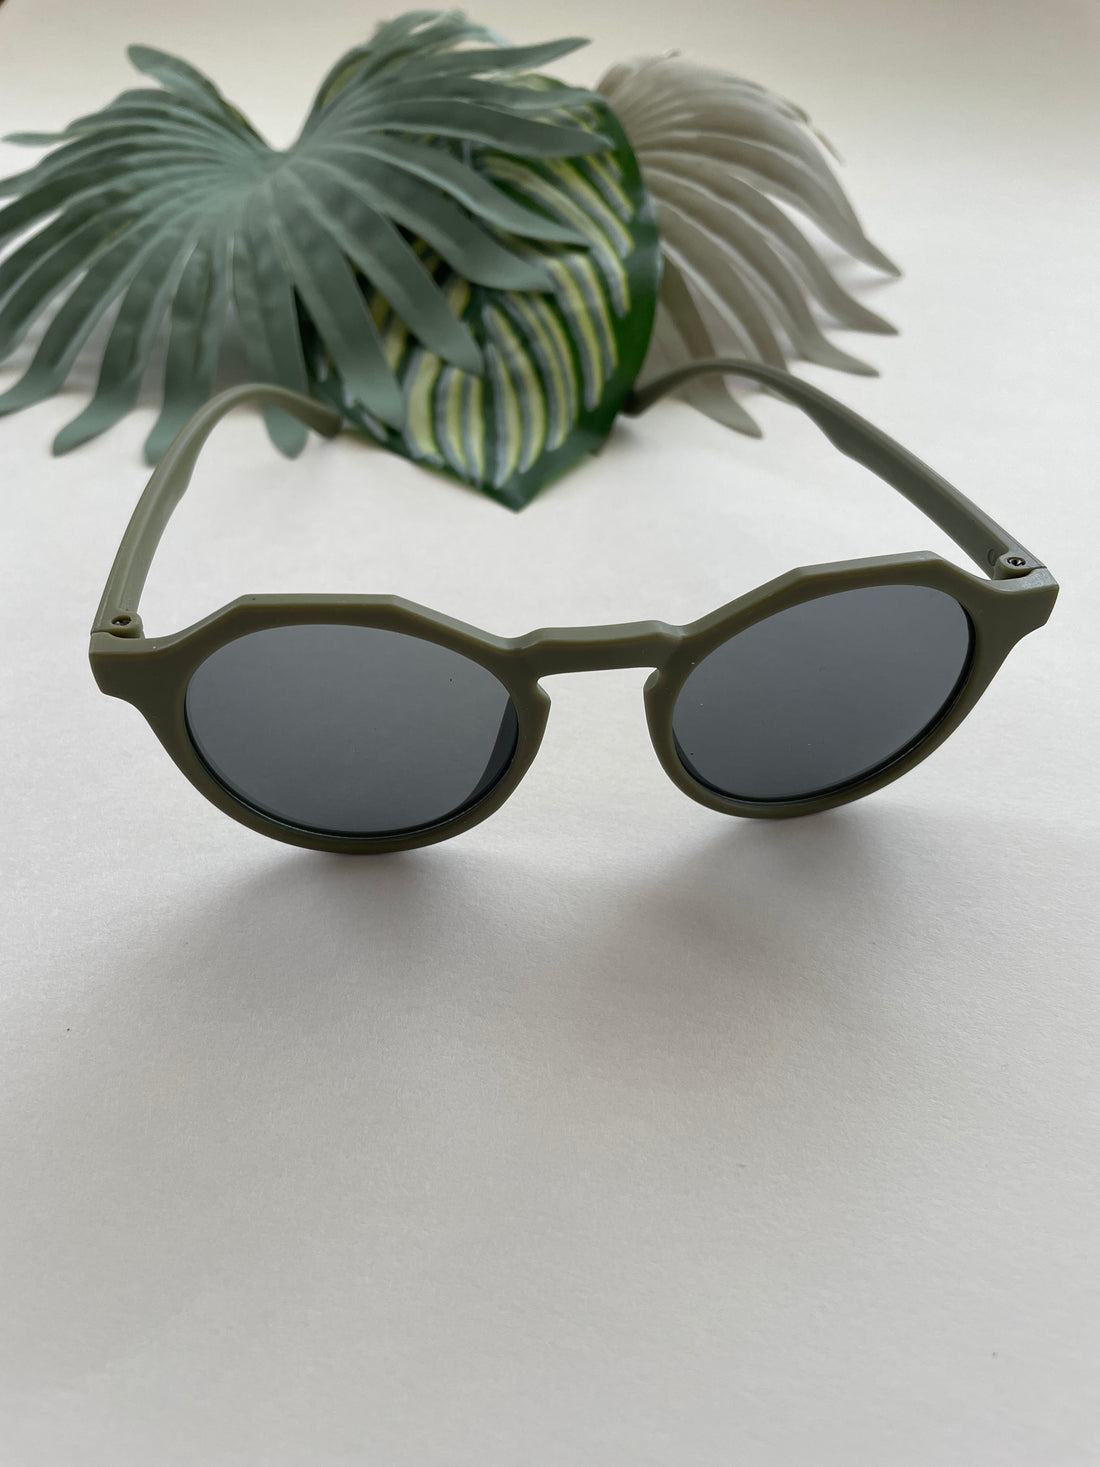 Hexagonal Sunglasses - Succulent Green